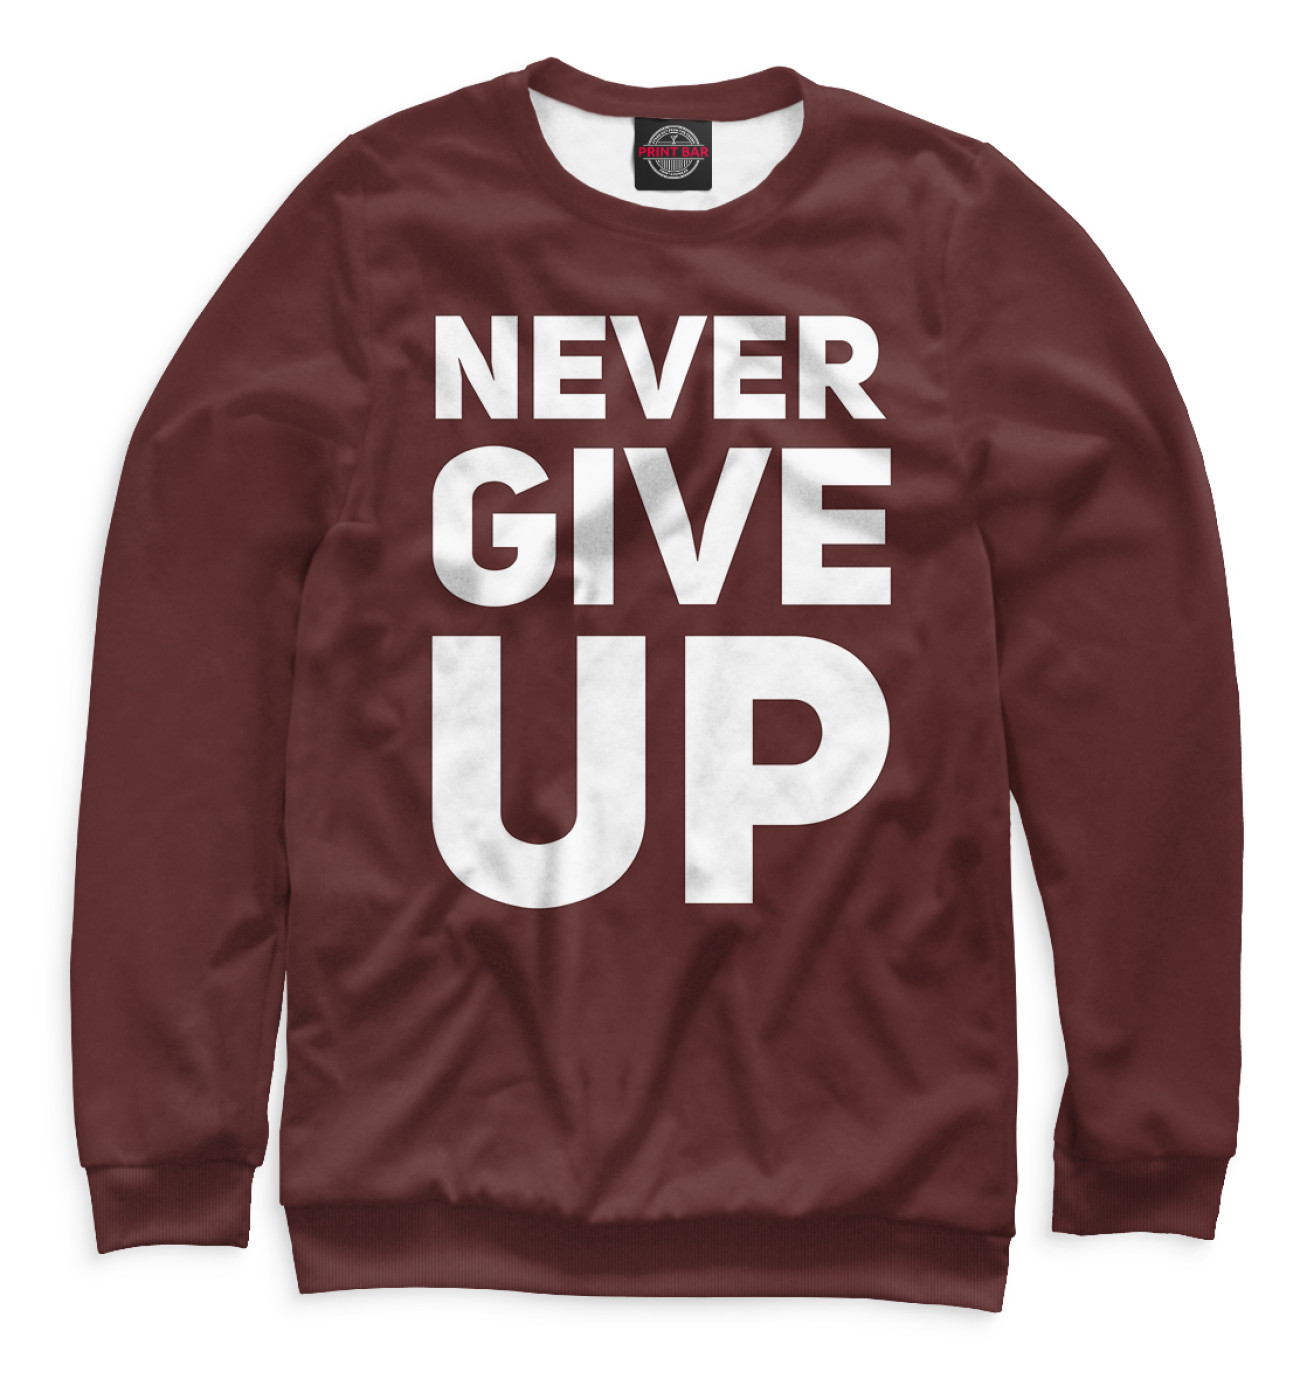 Мужской Свитшот Never Give Up, артикул: FTO-335398-swi-2